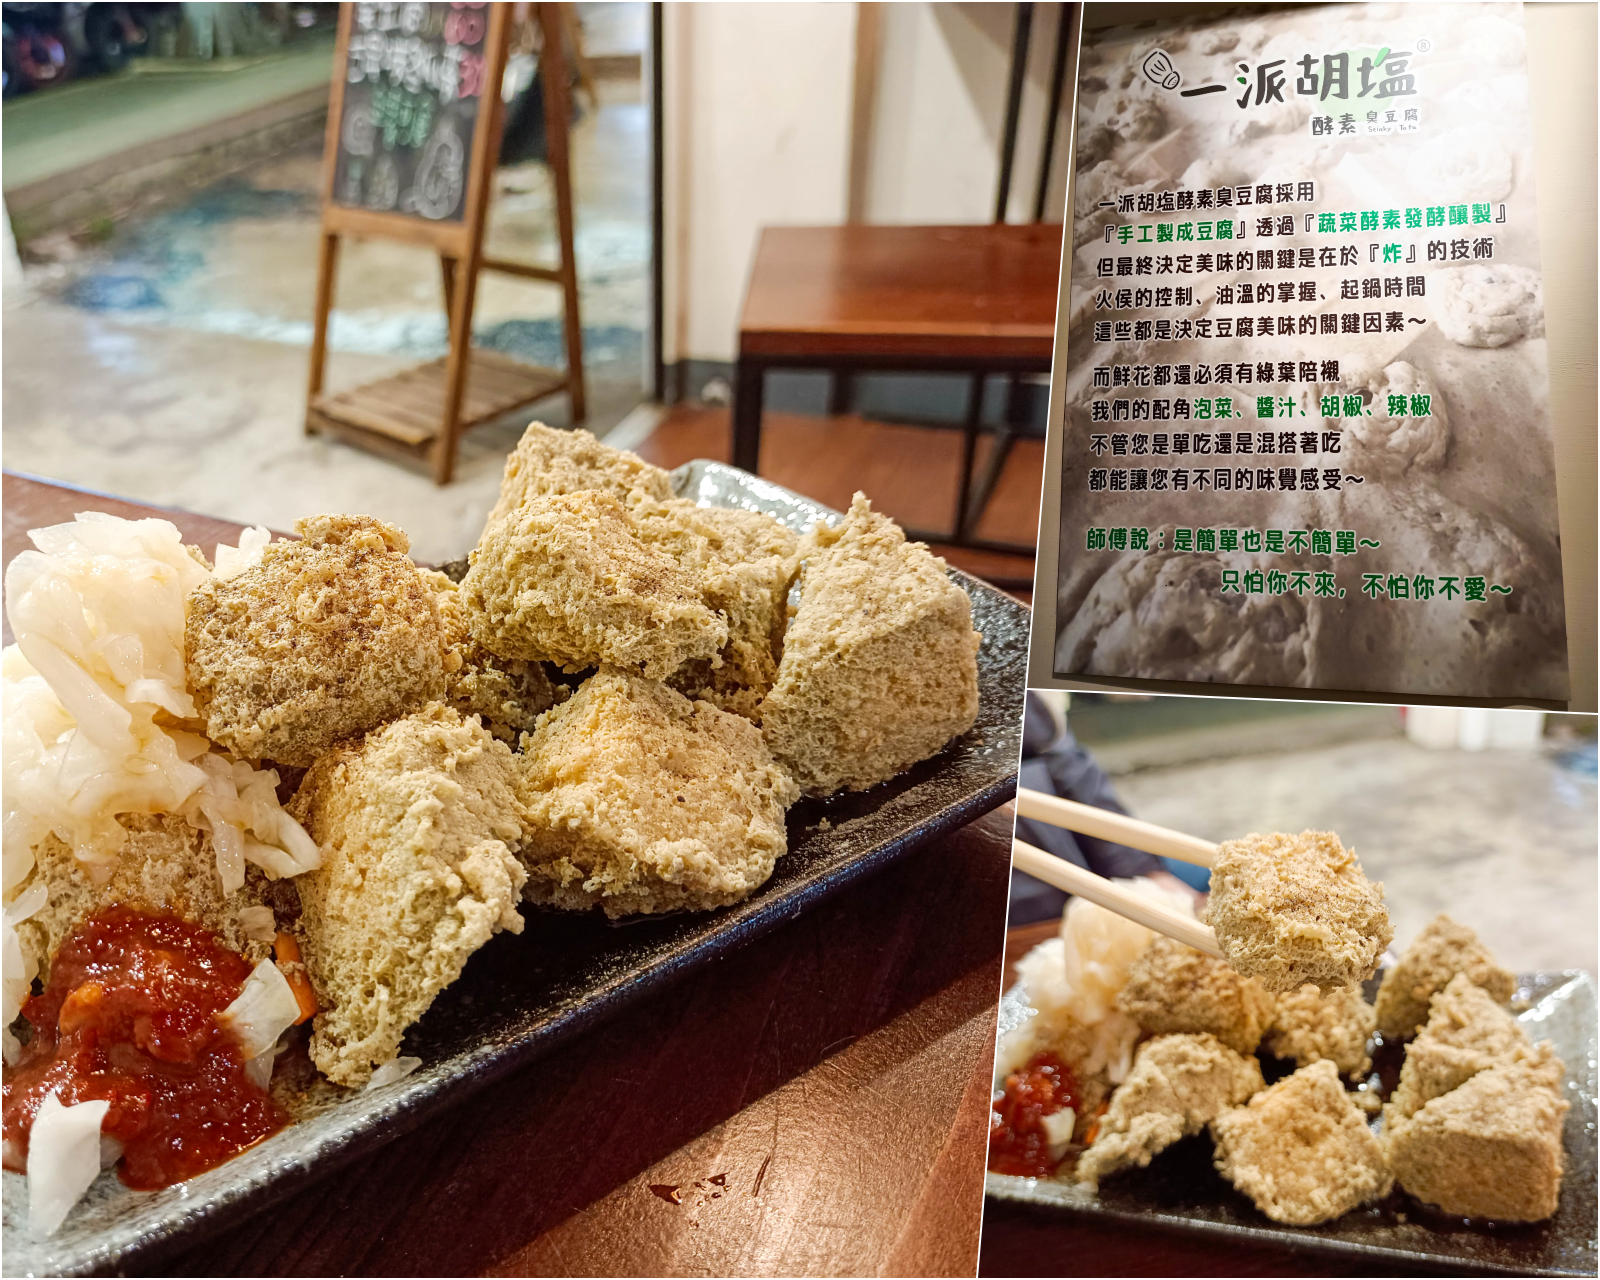 (信義區美食)PAUL信義店(A9)在台灣就可以吃到，道地法國美食擁有超過130年歷史，客製化餐盒讓你開會野餐很享受~ @Nancy將的生活筆計本